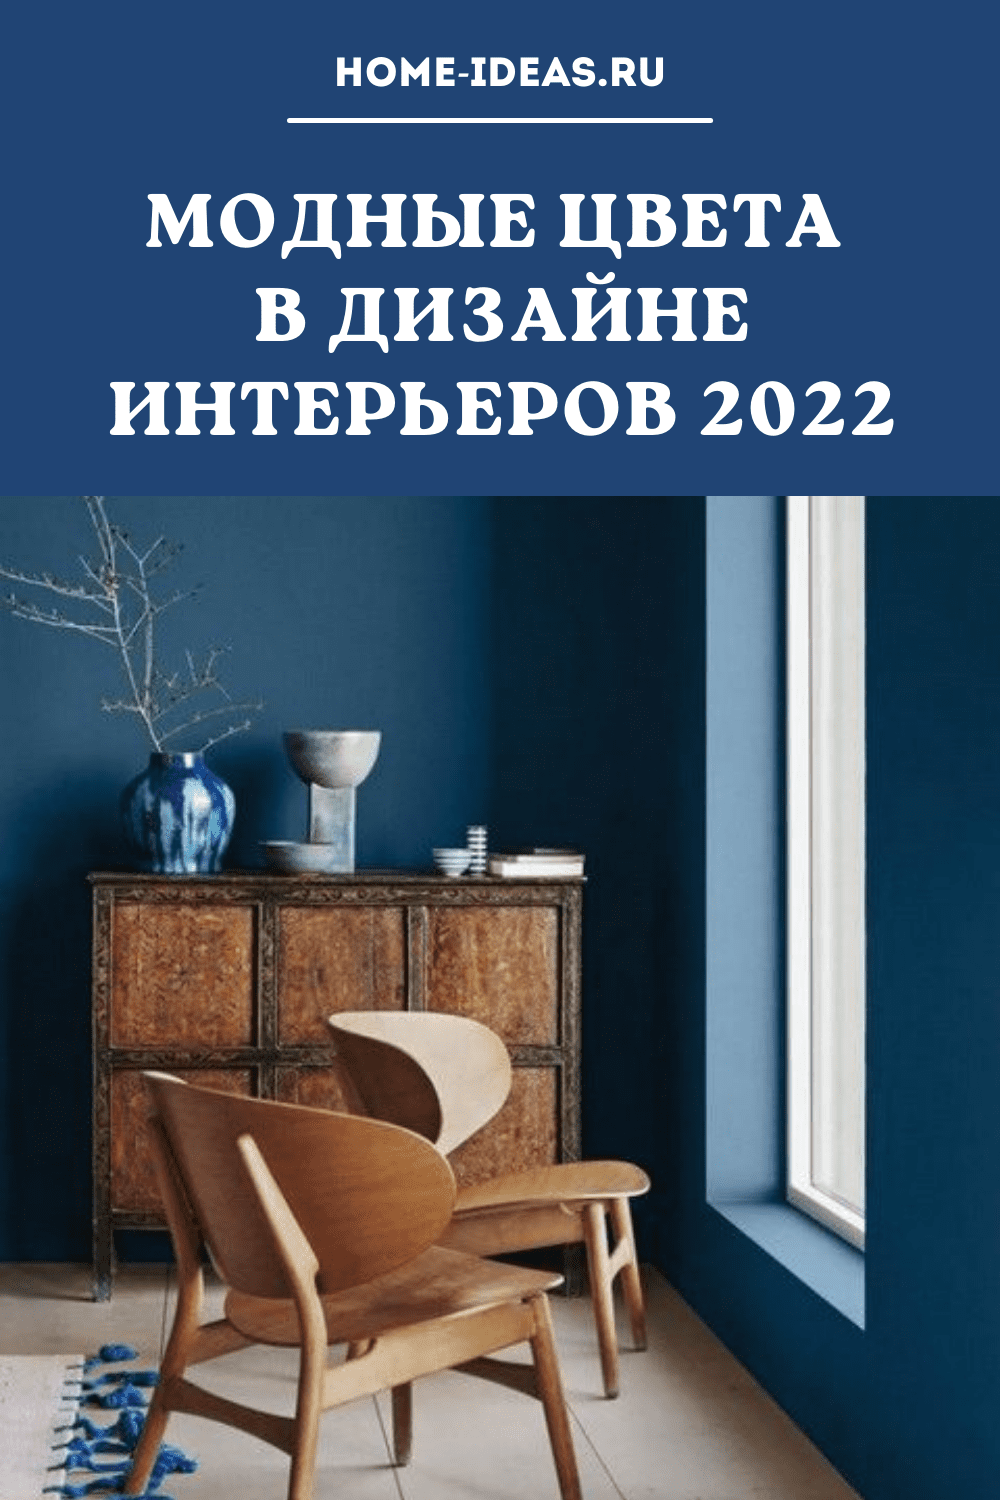 Модные цвета в дизайне интерьеров 2022